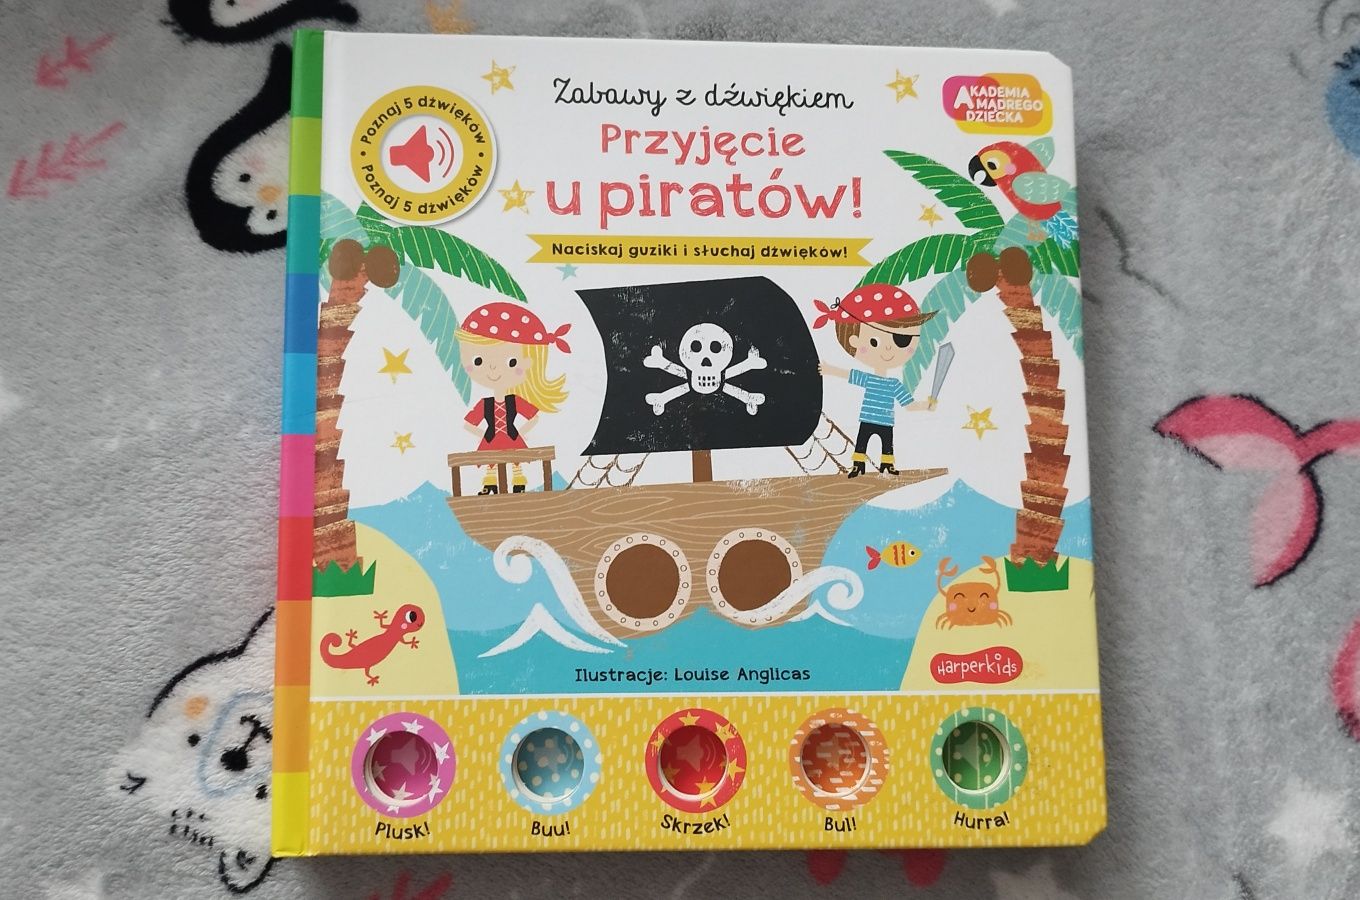 Akademia Mądrego Dziecka Przyjęcie U Piratów